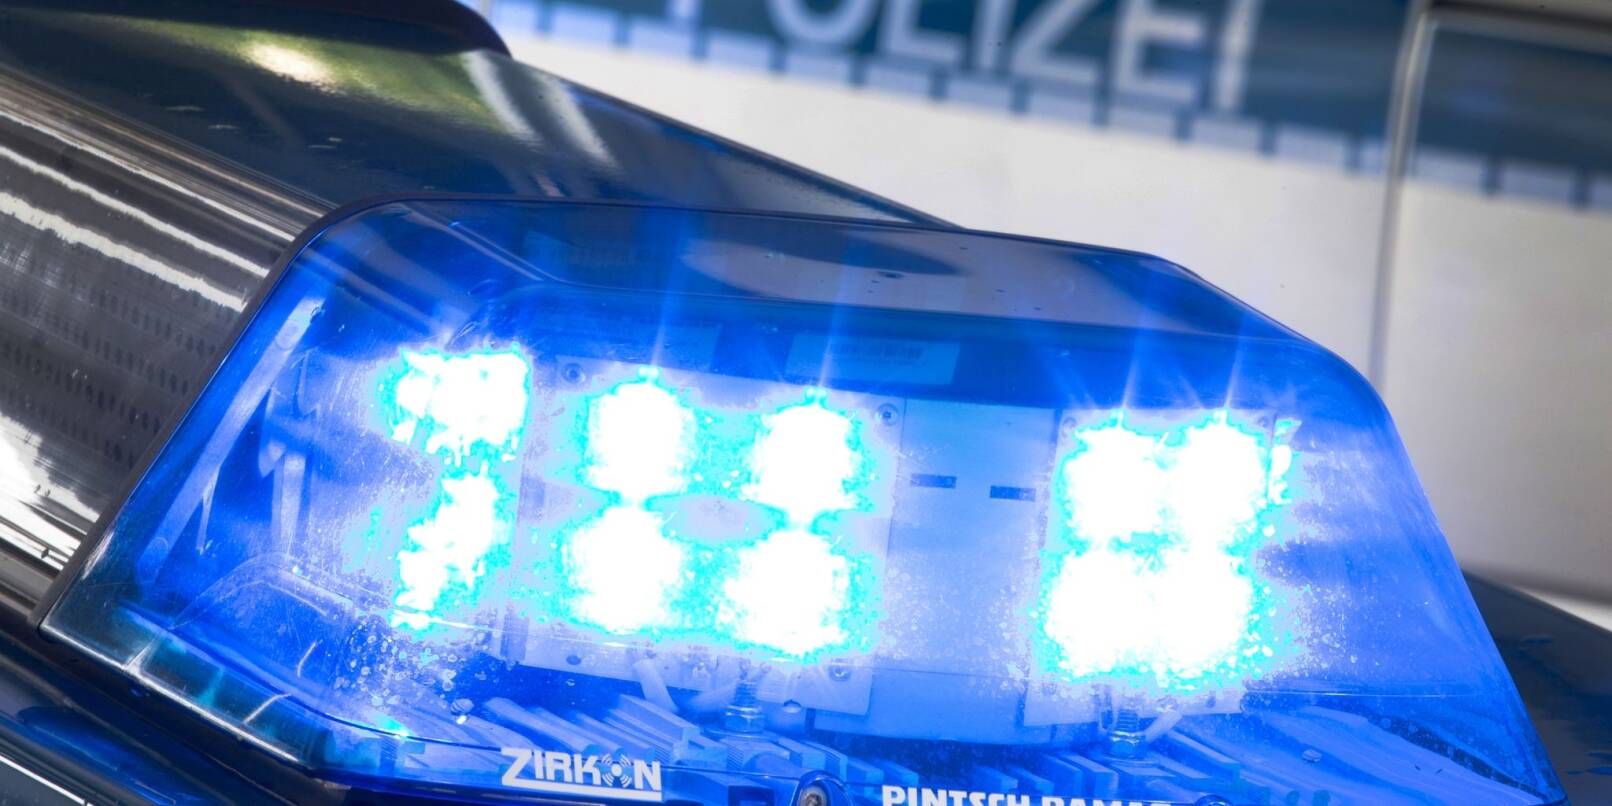 In Salzgitter wurde eine 23-Jährige tot in ihrer Wohnung gefunden (Symbolbild).